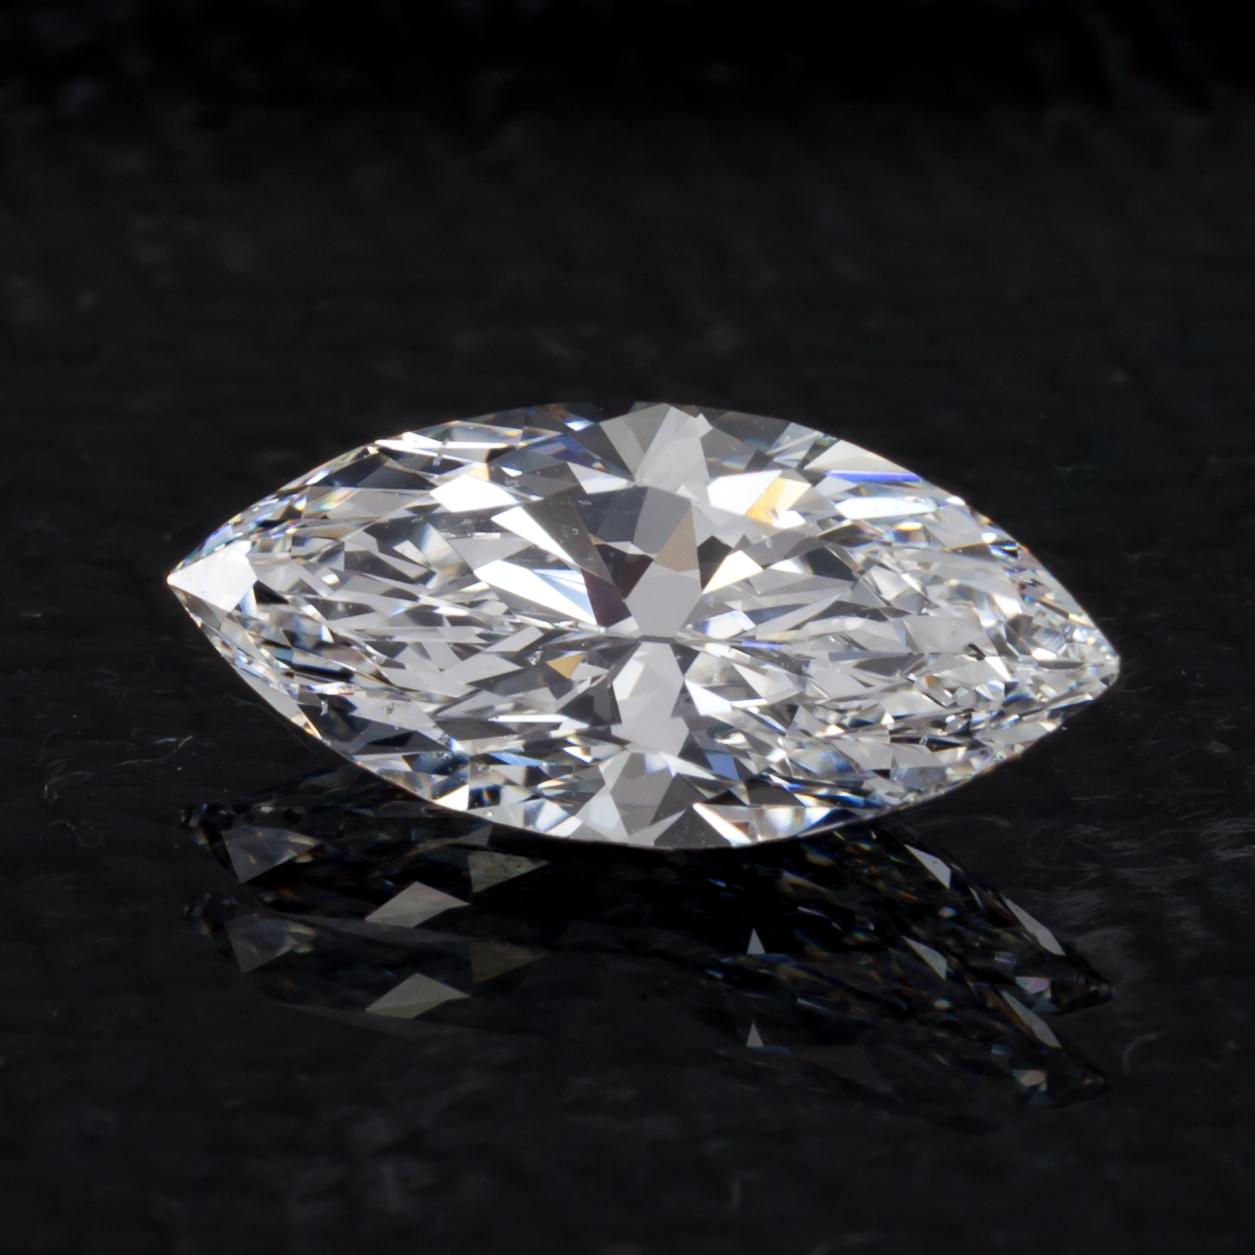 Informations générales sur le diamant
Numéro de rapport GIA : 6187448186
Taille du diamant : Brilliante Marquise 
Dimensions : 12,28 x 5,63 x 3,86 mm

Résultats de la classification des diamants
Poids en carats : 1,58
Grade de couleur : D
Degré de